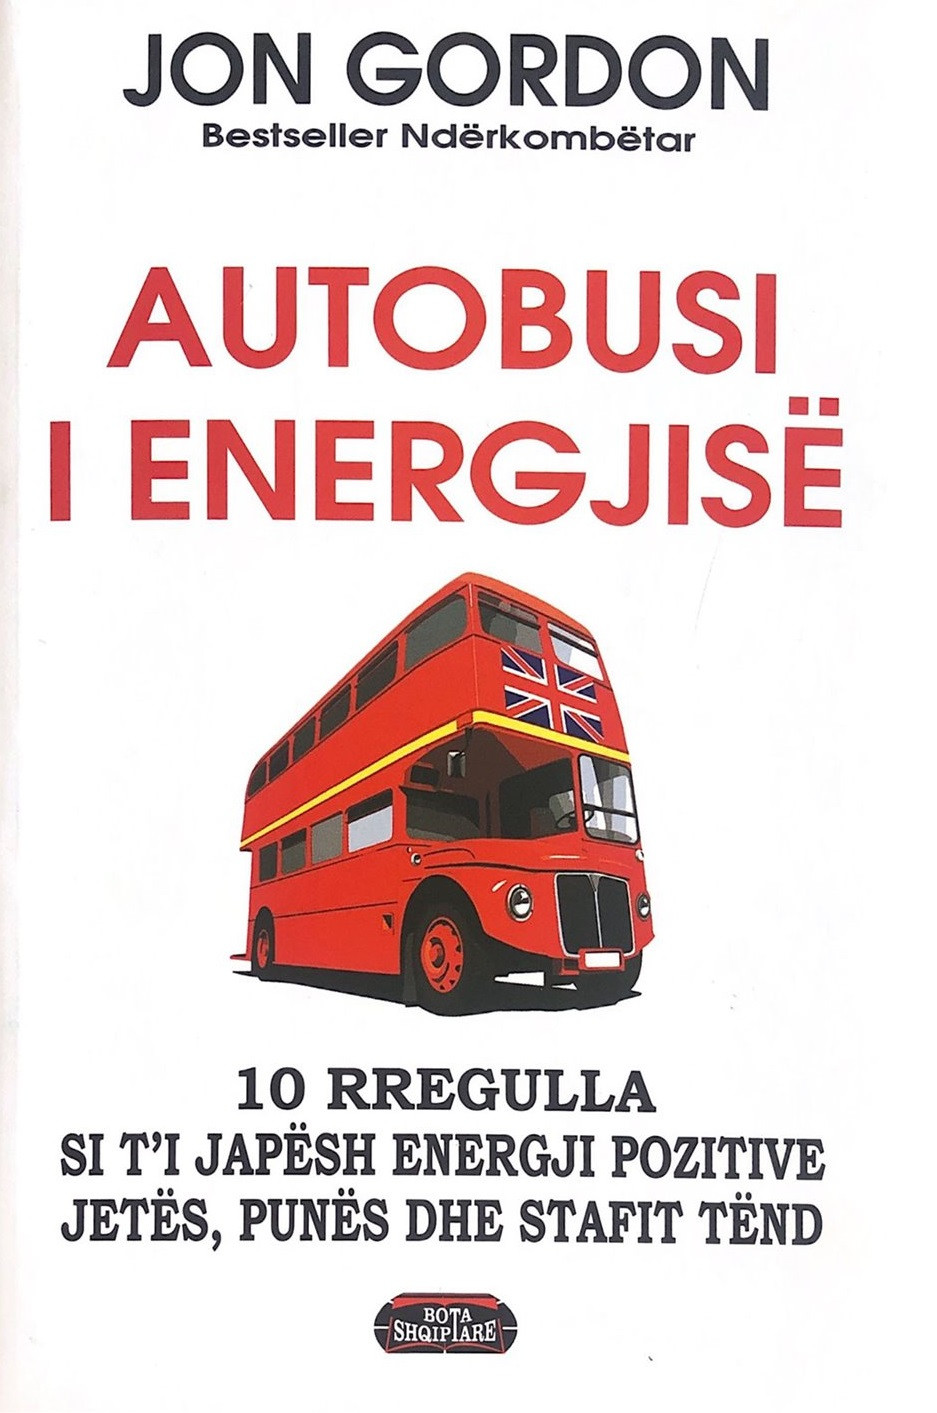 Autobusi i energjive